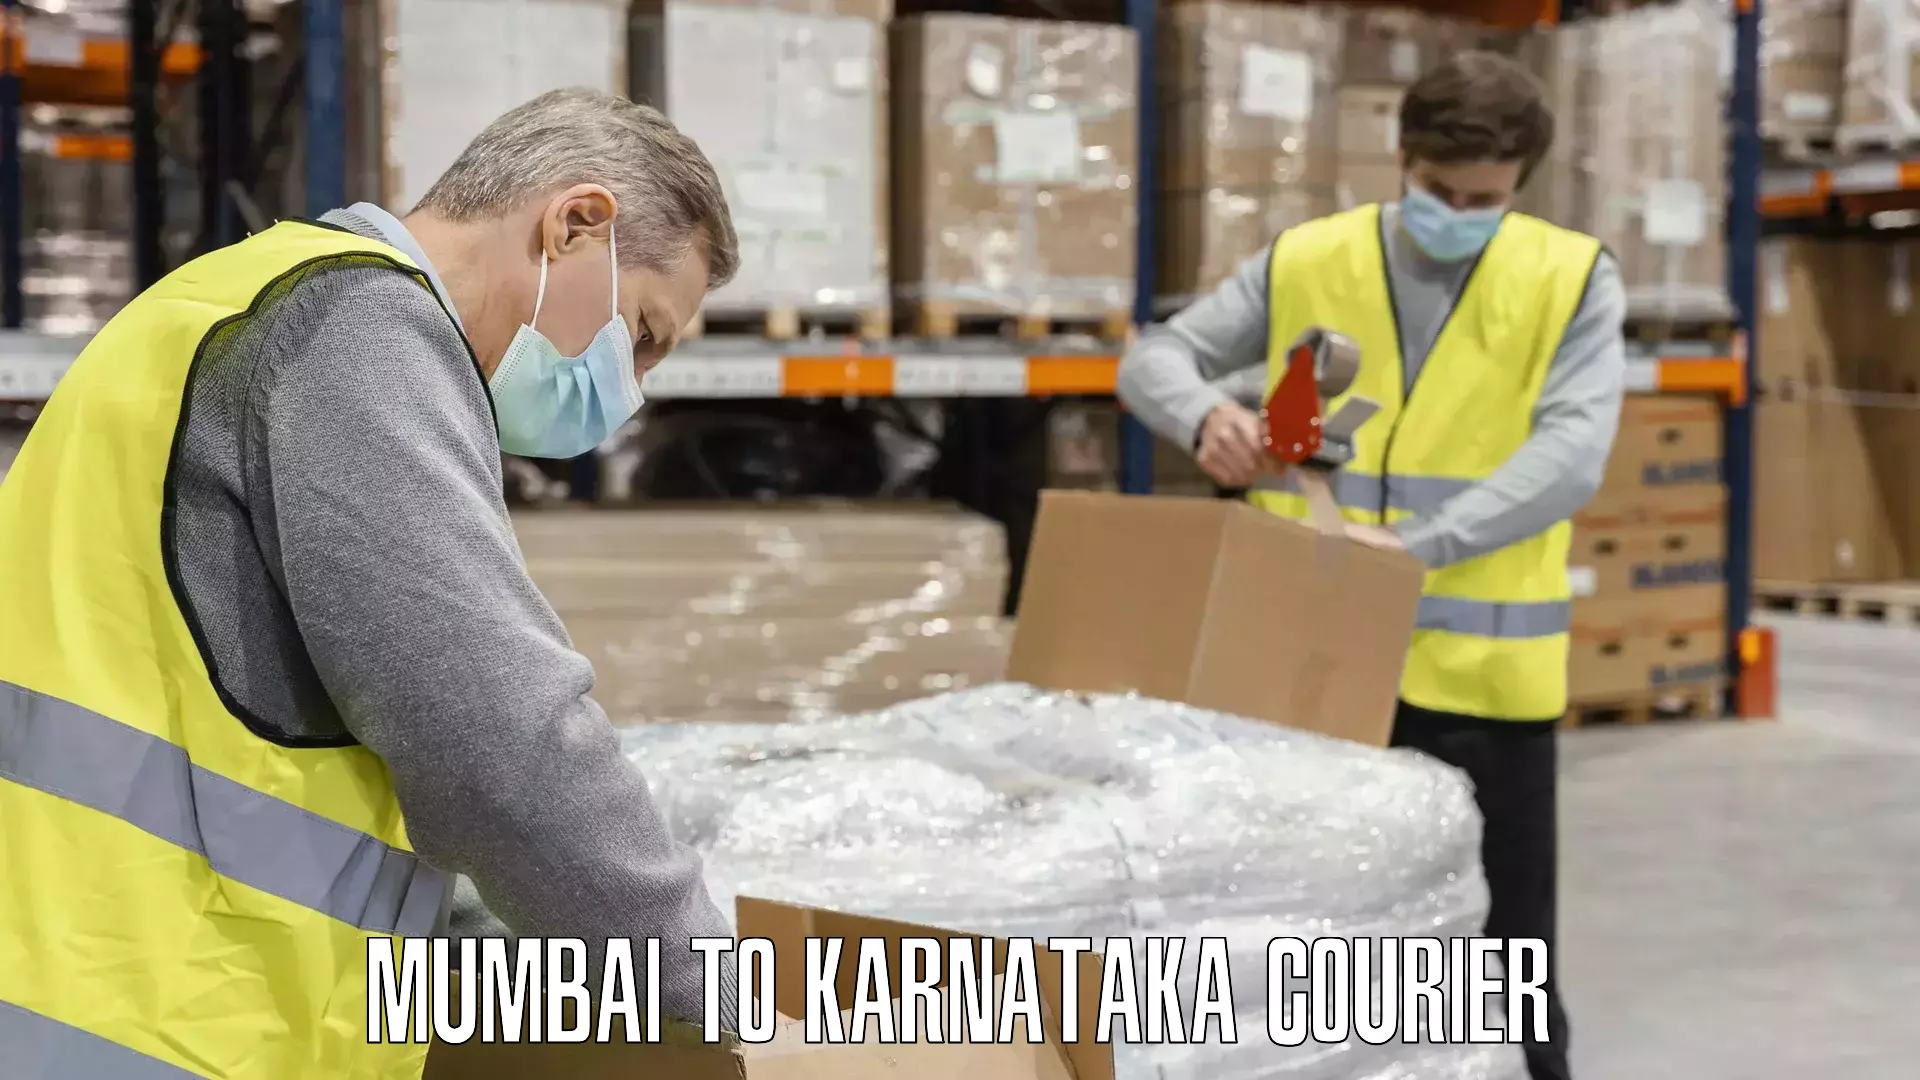 Baggage shipping service Mumbai to Karnataka